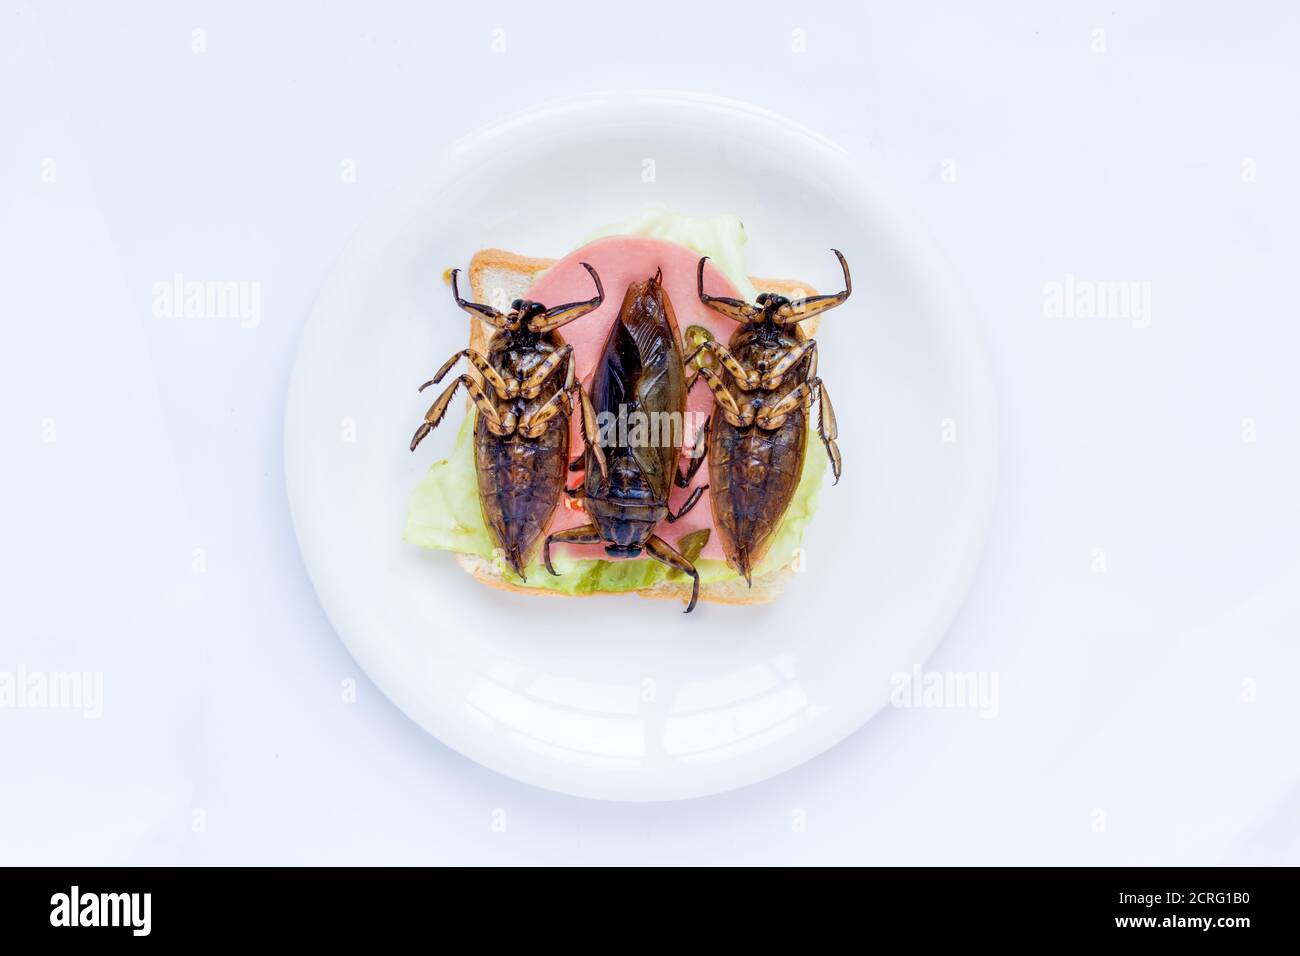 Ein großer Käfer auf Toast auf einem Teller. Angebot an essbaren Insekten - gebratener Riesenwasserkäfer - Lethocerus indicus auf Sandwichtoast Stockfoto